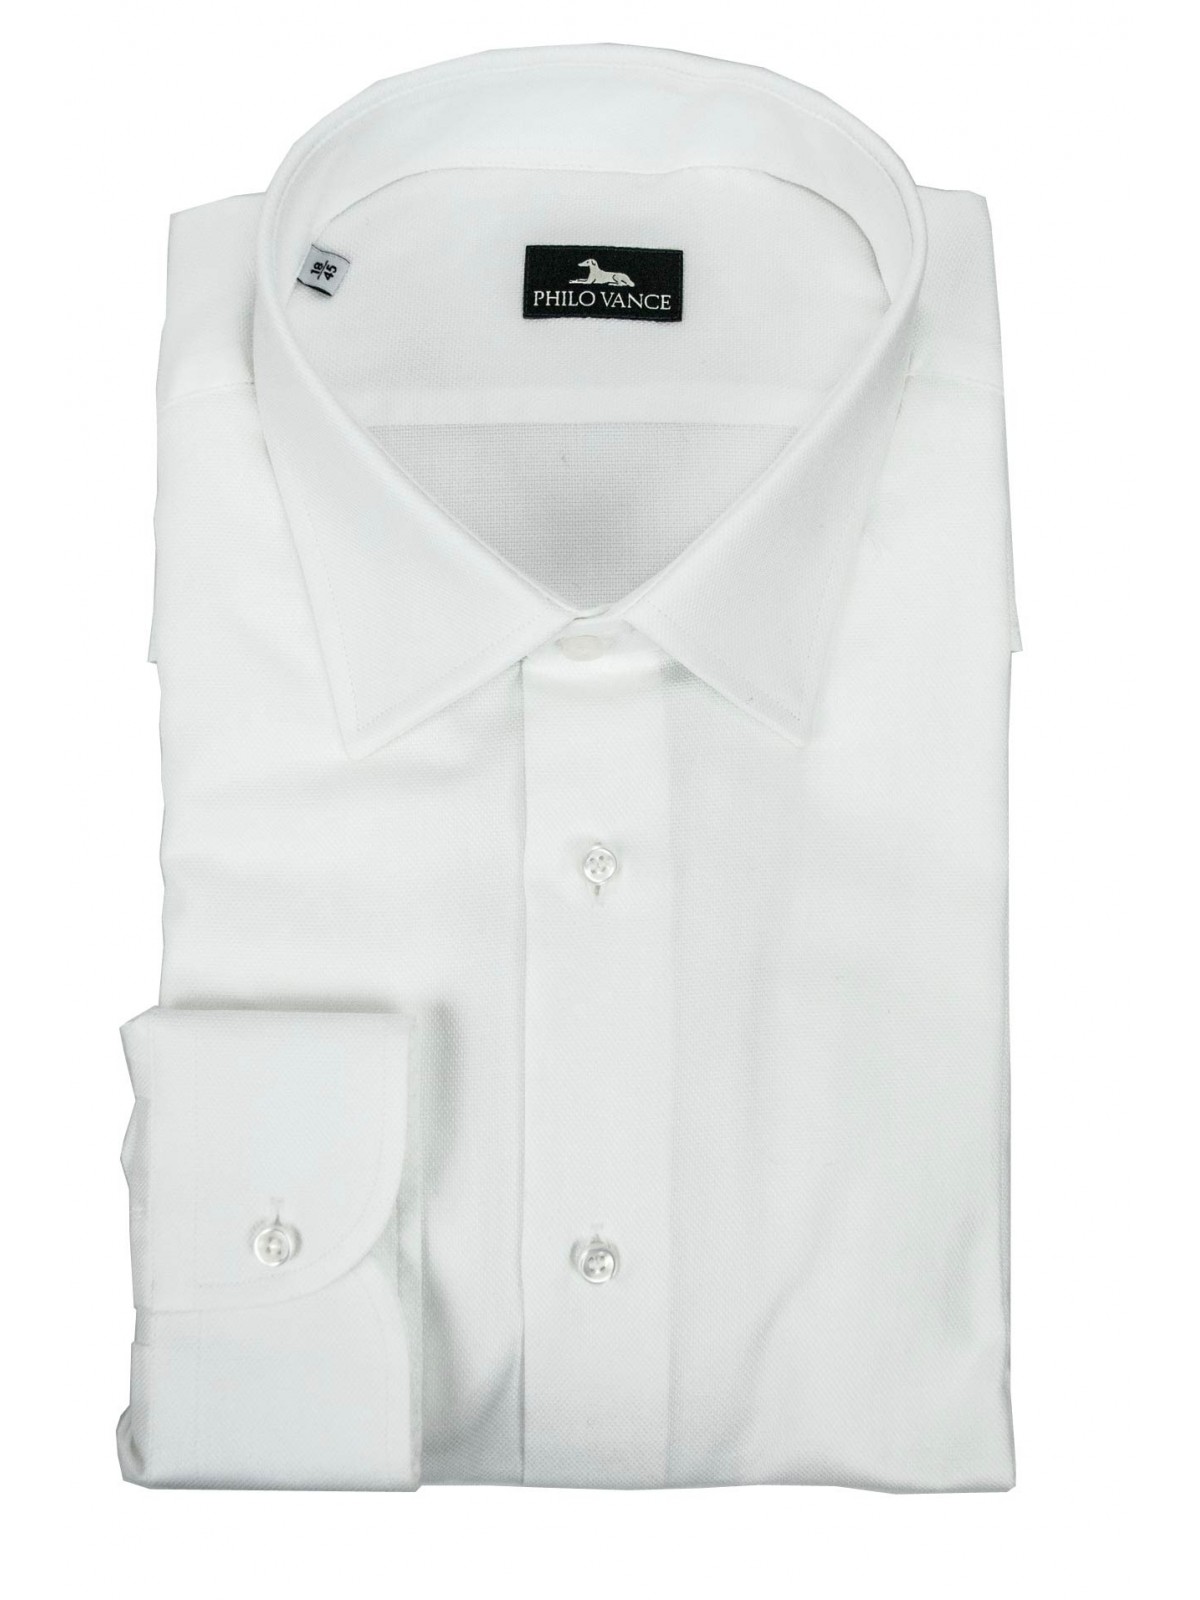 Camisa de vestir de hombre blanca de tela tejida - Philo Vance - Dresden